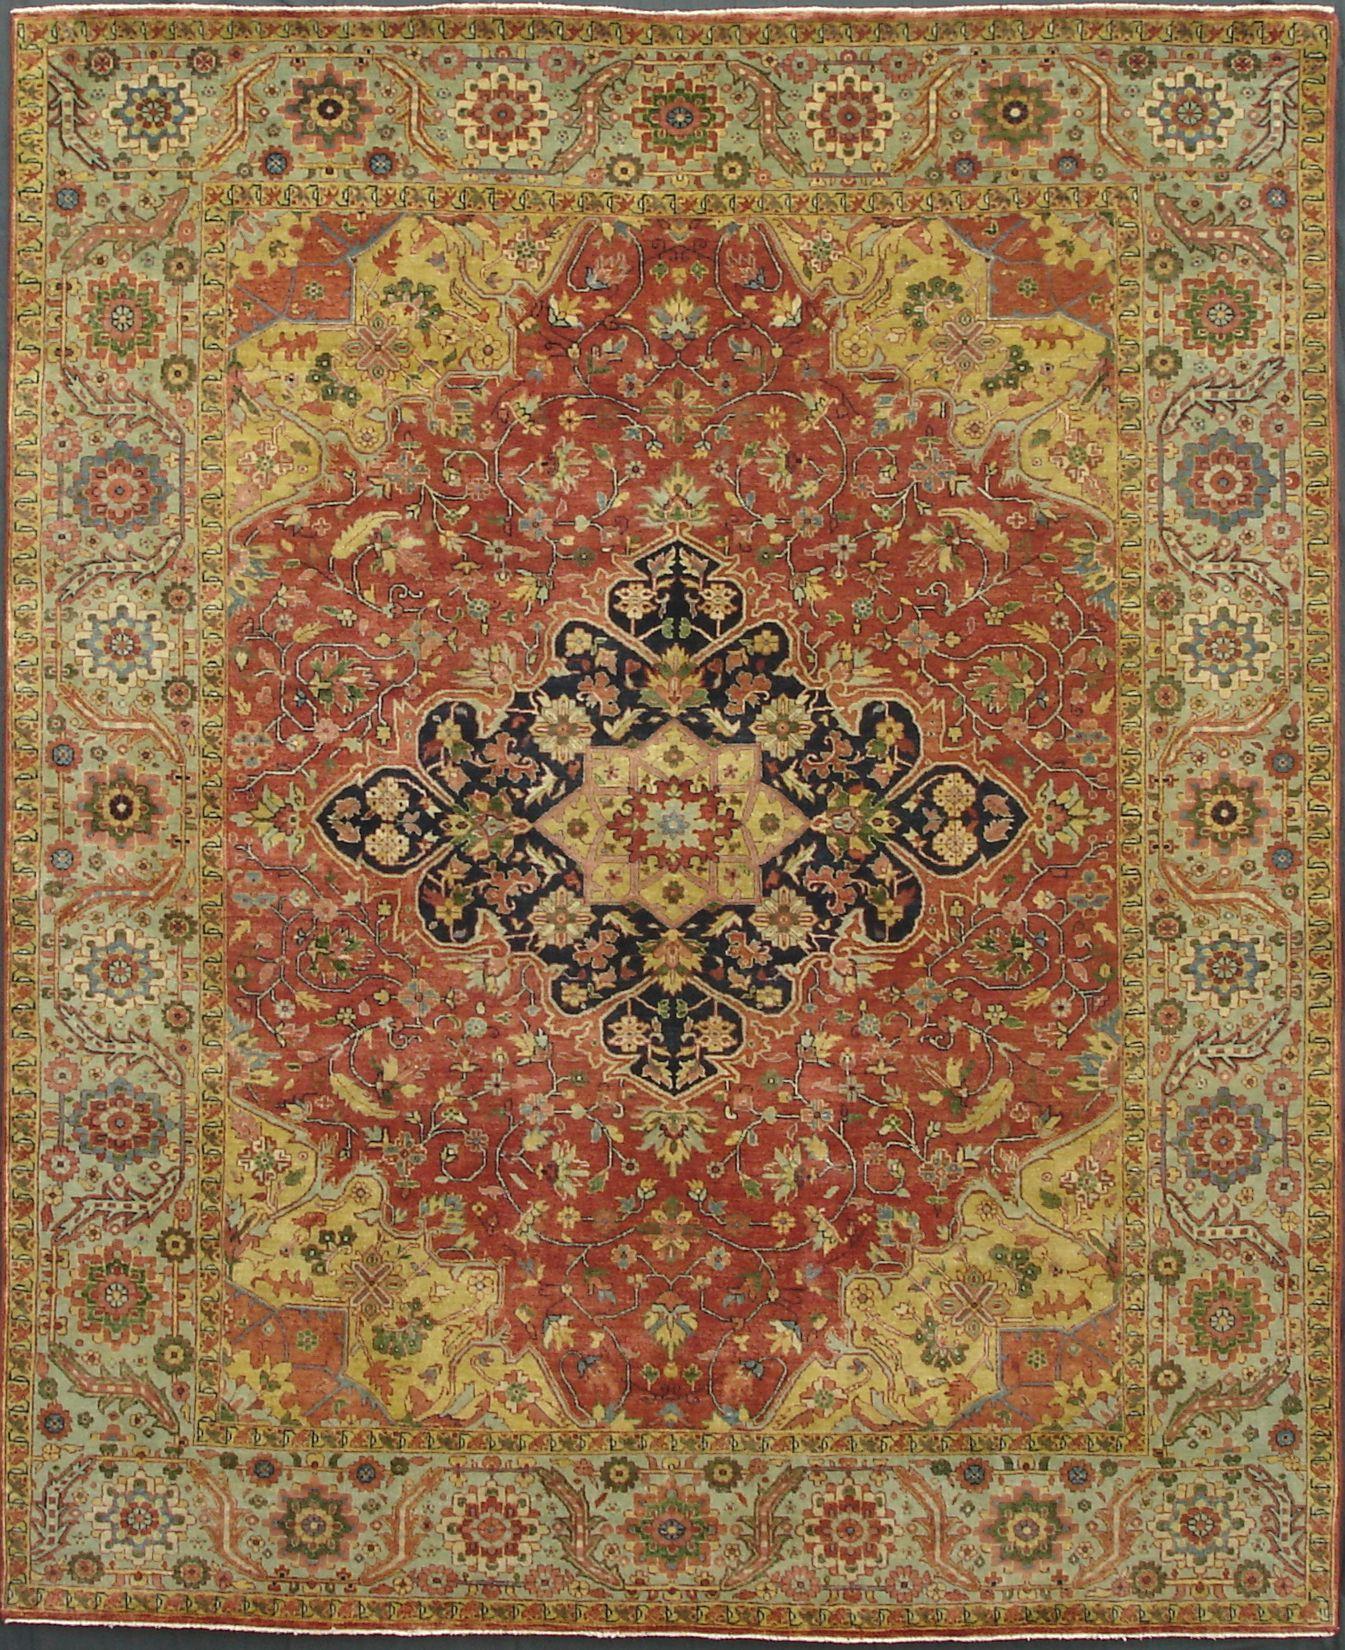 Schöner neuer Teppich mit schönem persischen Design und schönen Farben, komplett handgeknüpft mit Wollsamt auf Baumwollbasis.